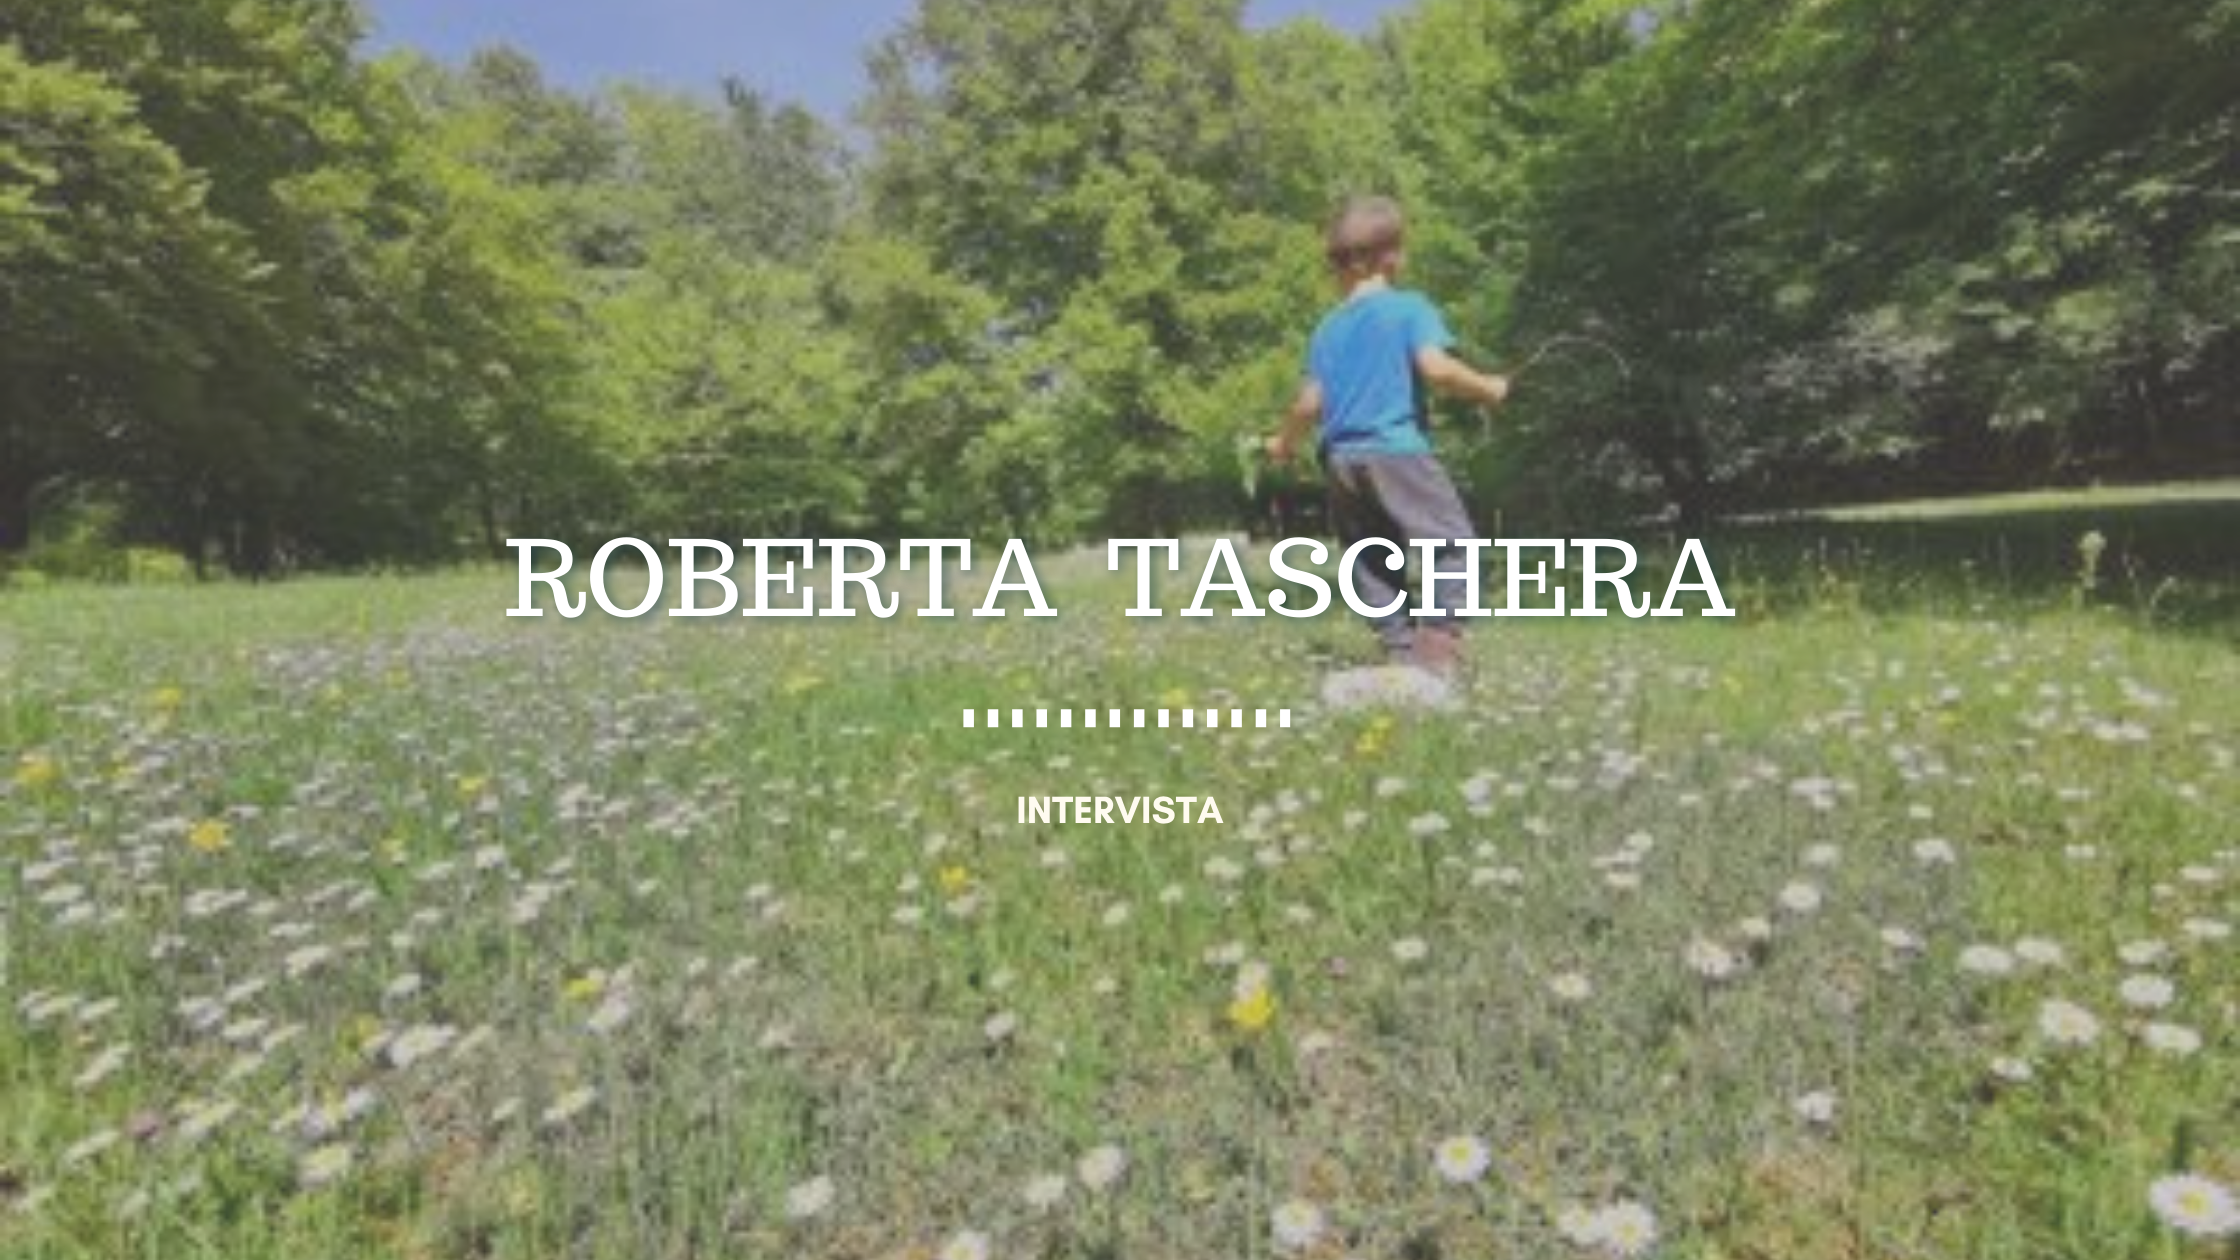 Roberta Taschera, come vive l’emergenza Covid una guida ambientale